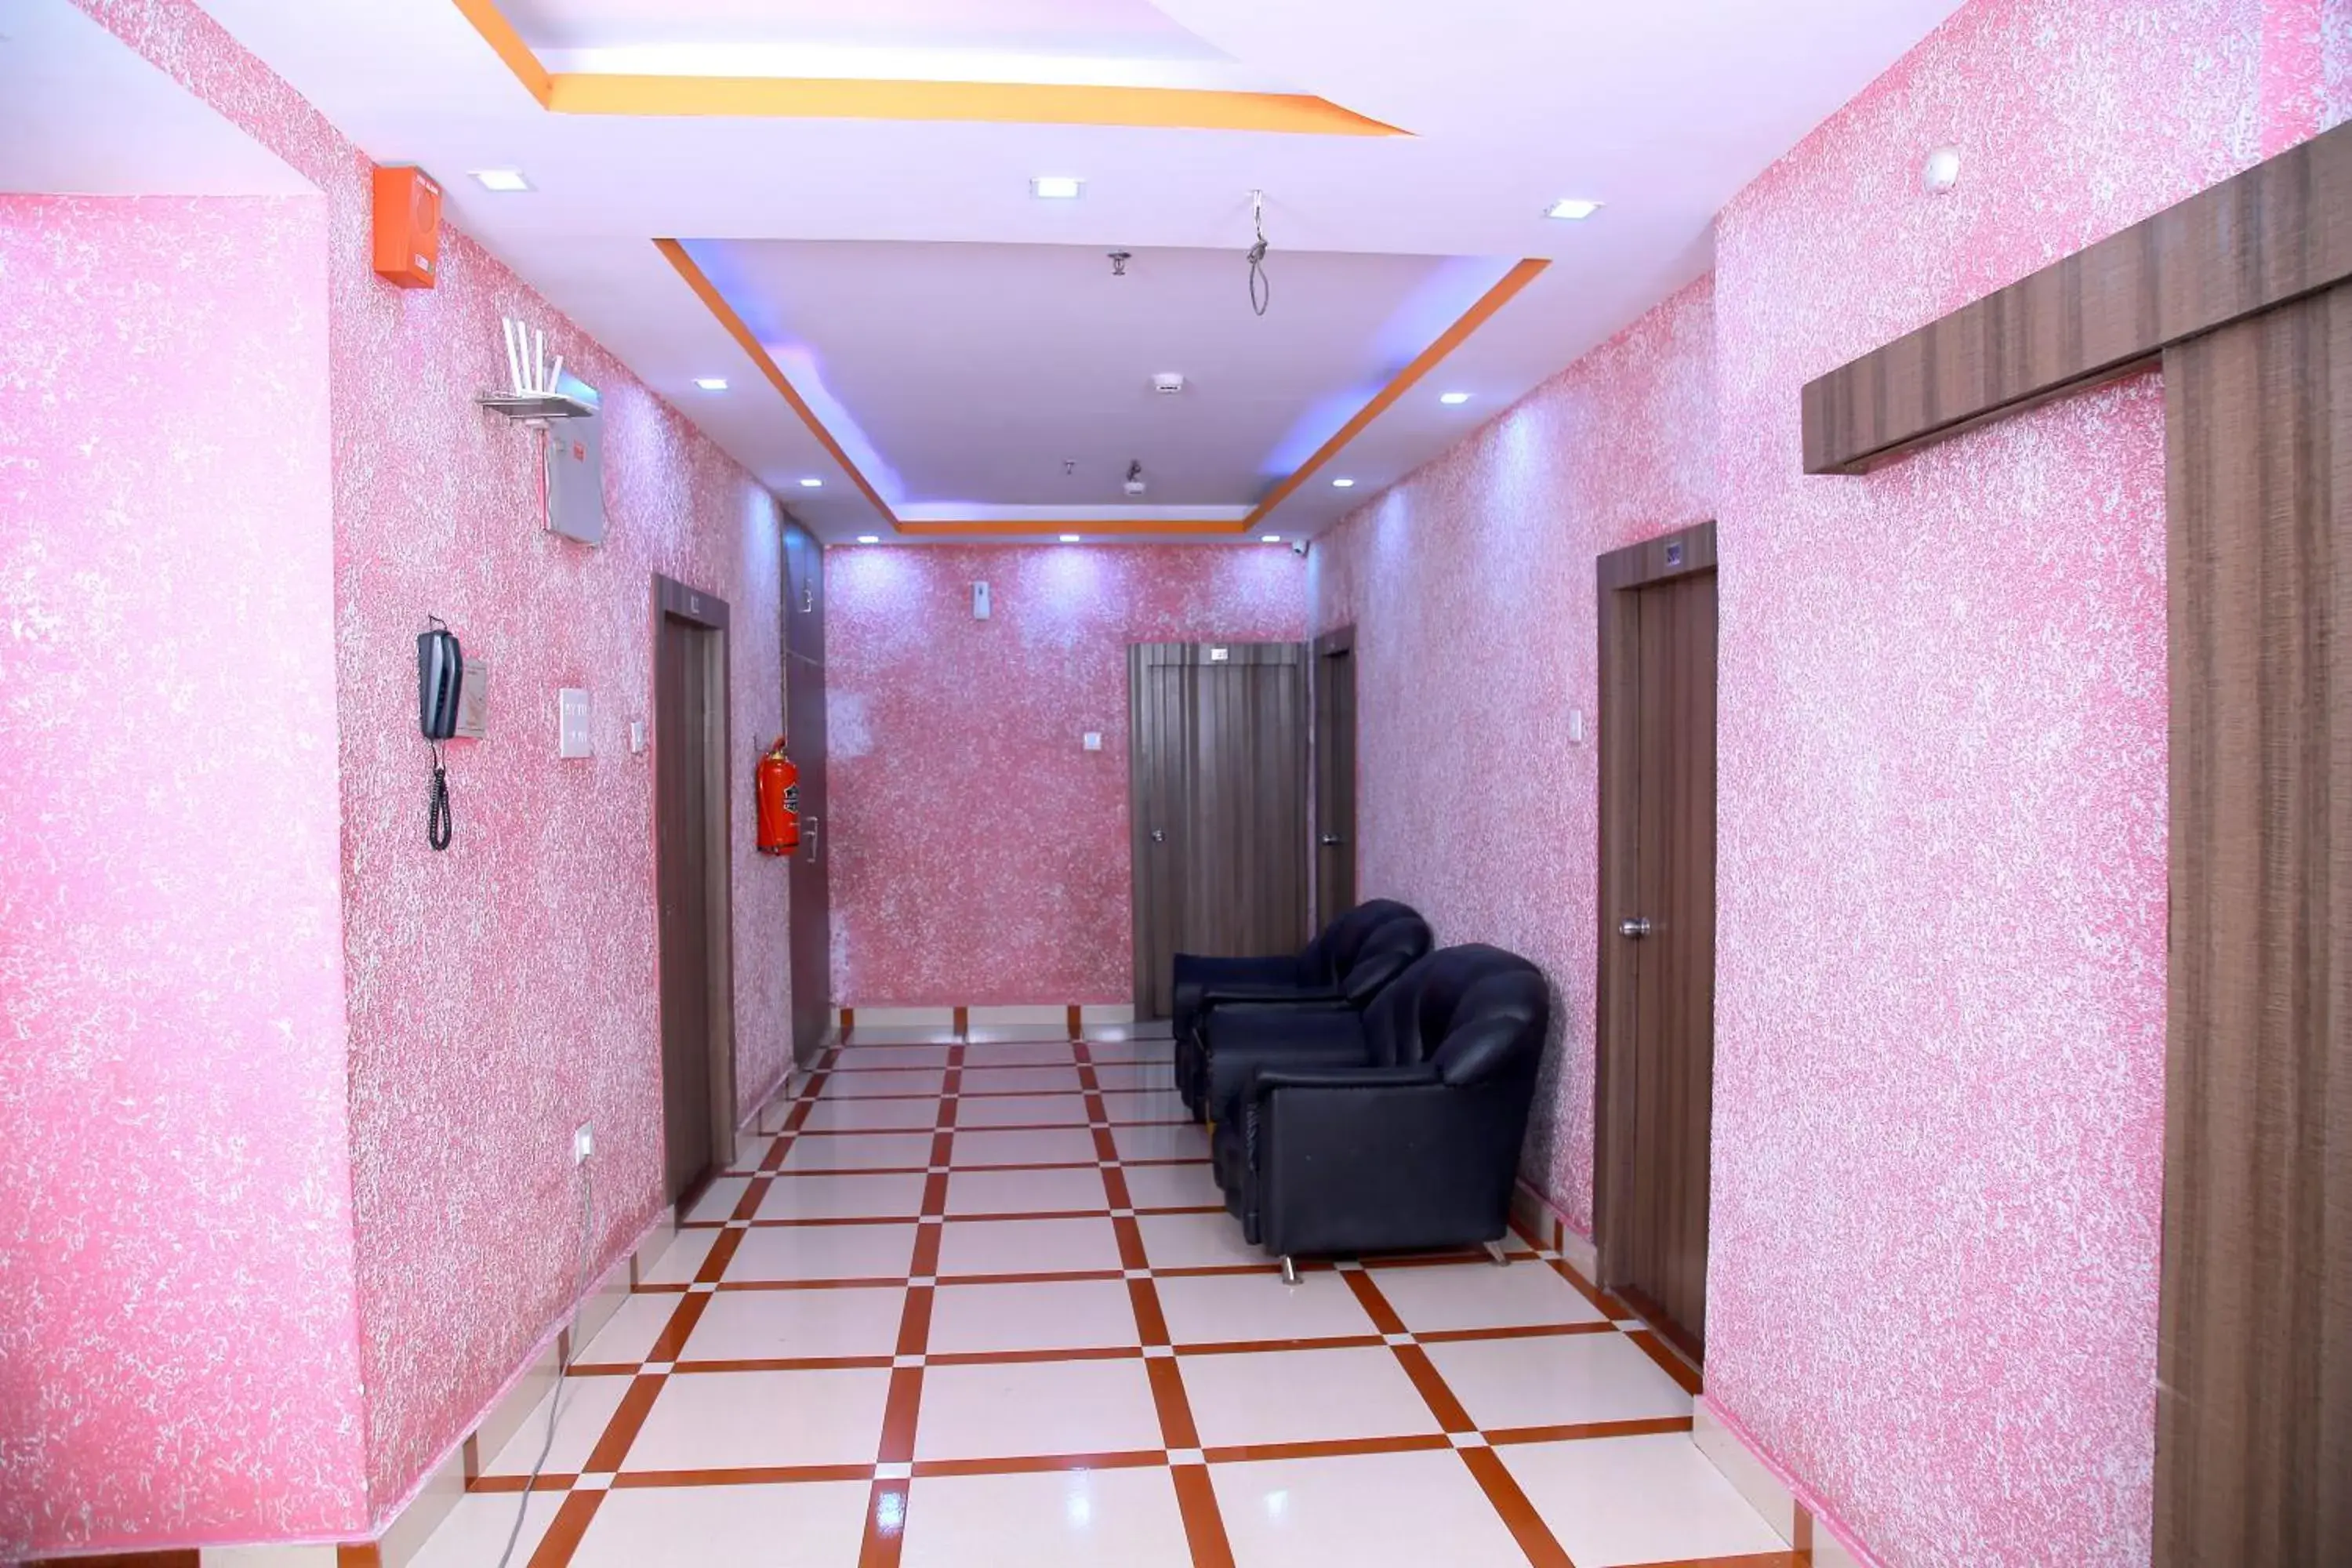 Lobby or reception, Lobby/Reception in Babul Hotel